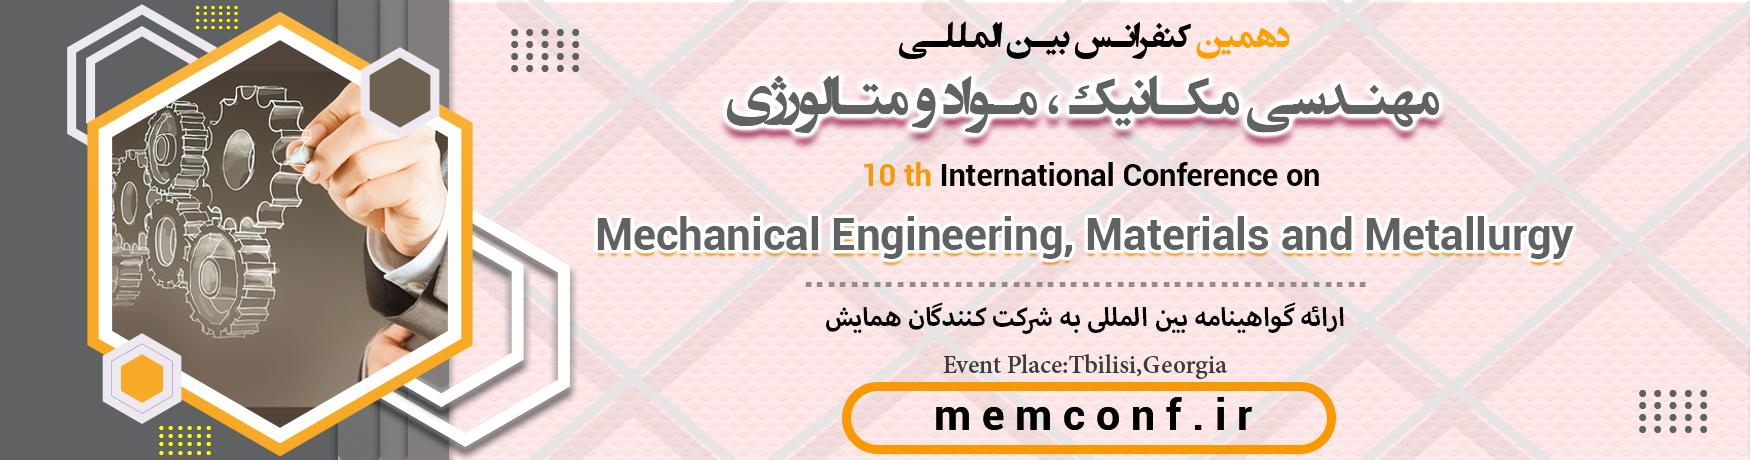 کنفرانس بین المللی مهندسی مکانیک ، مواد و متالورژی	